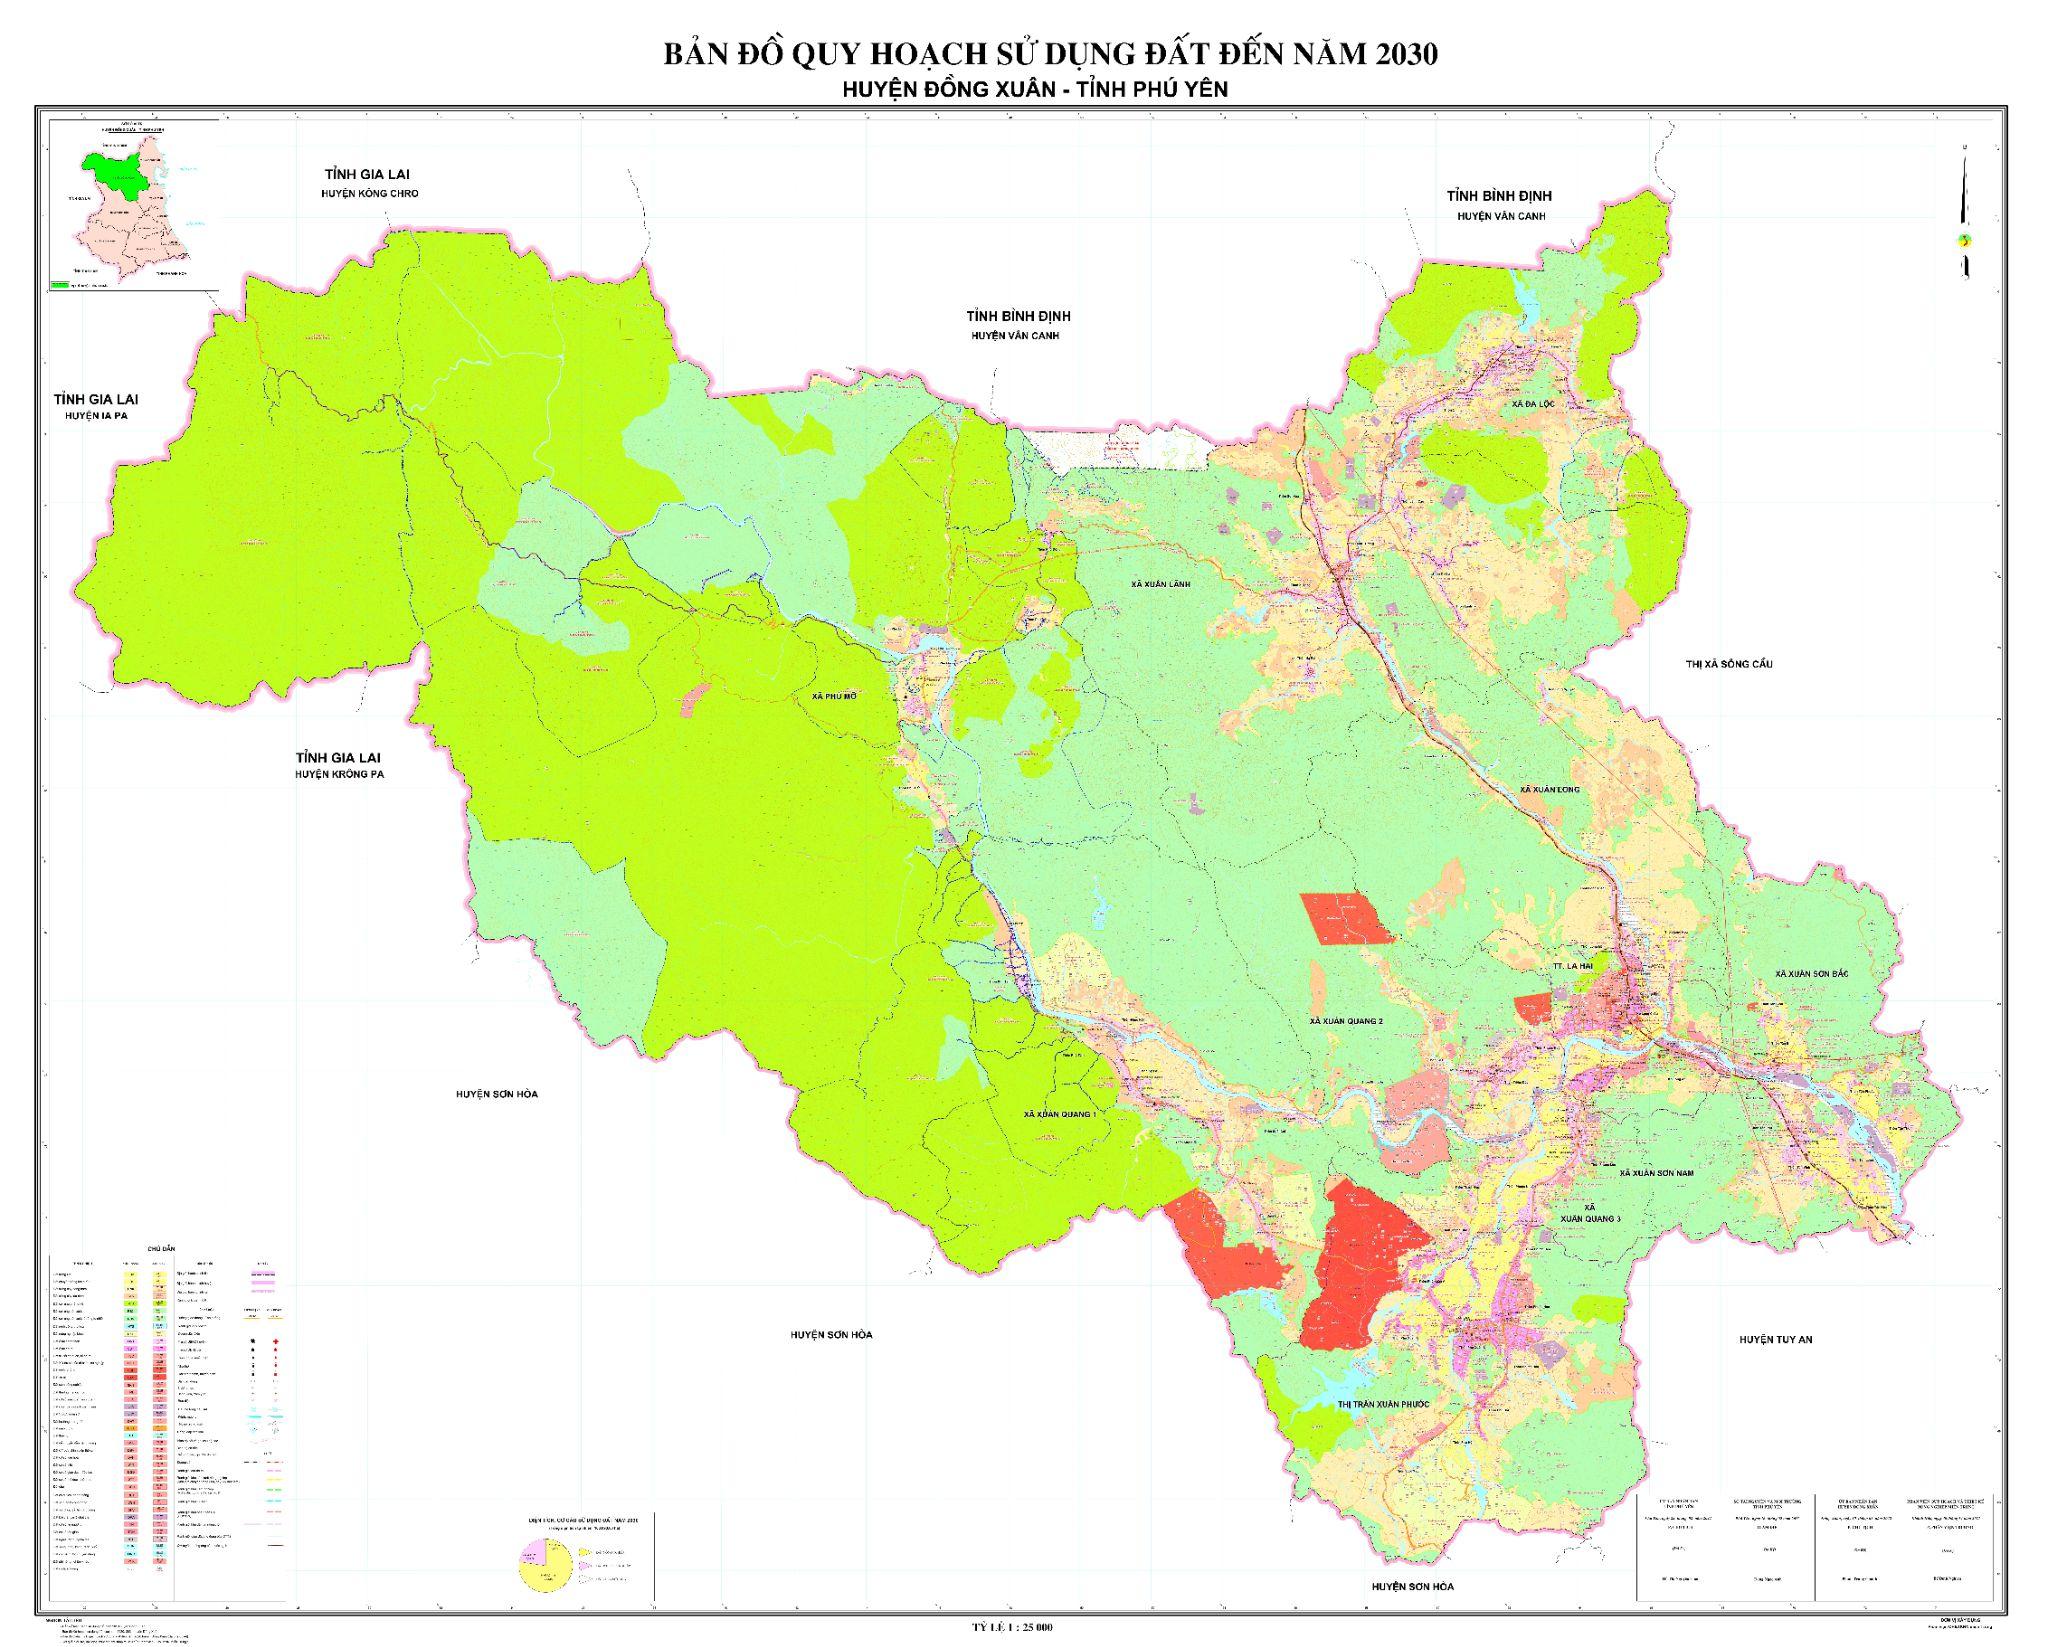 Bản đồ quy hoạch sử dụng đất huyện Đông Xuân, tỉnh Phú Yên mới nhất